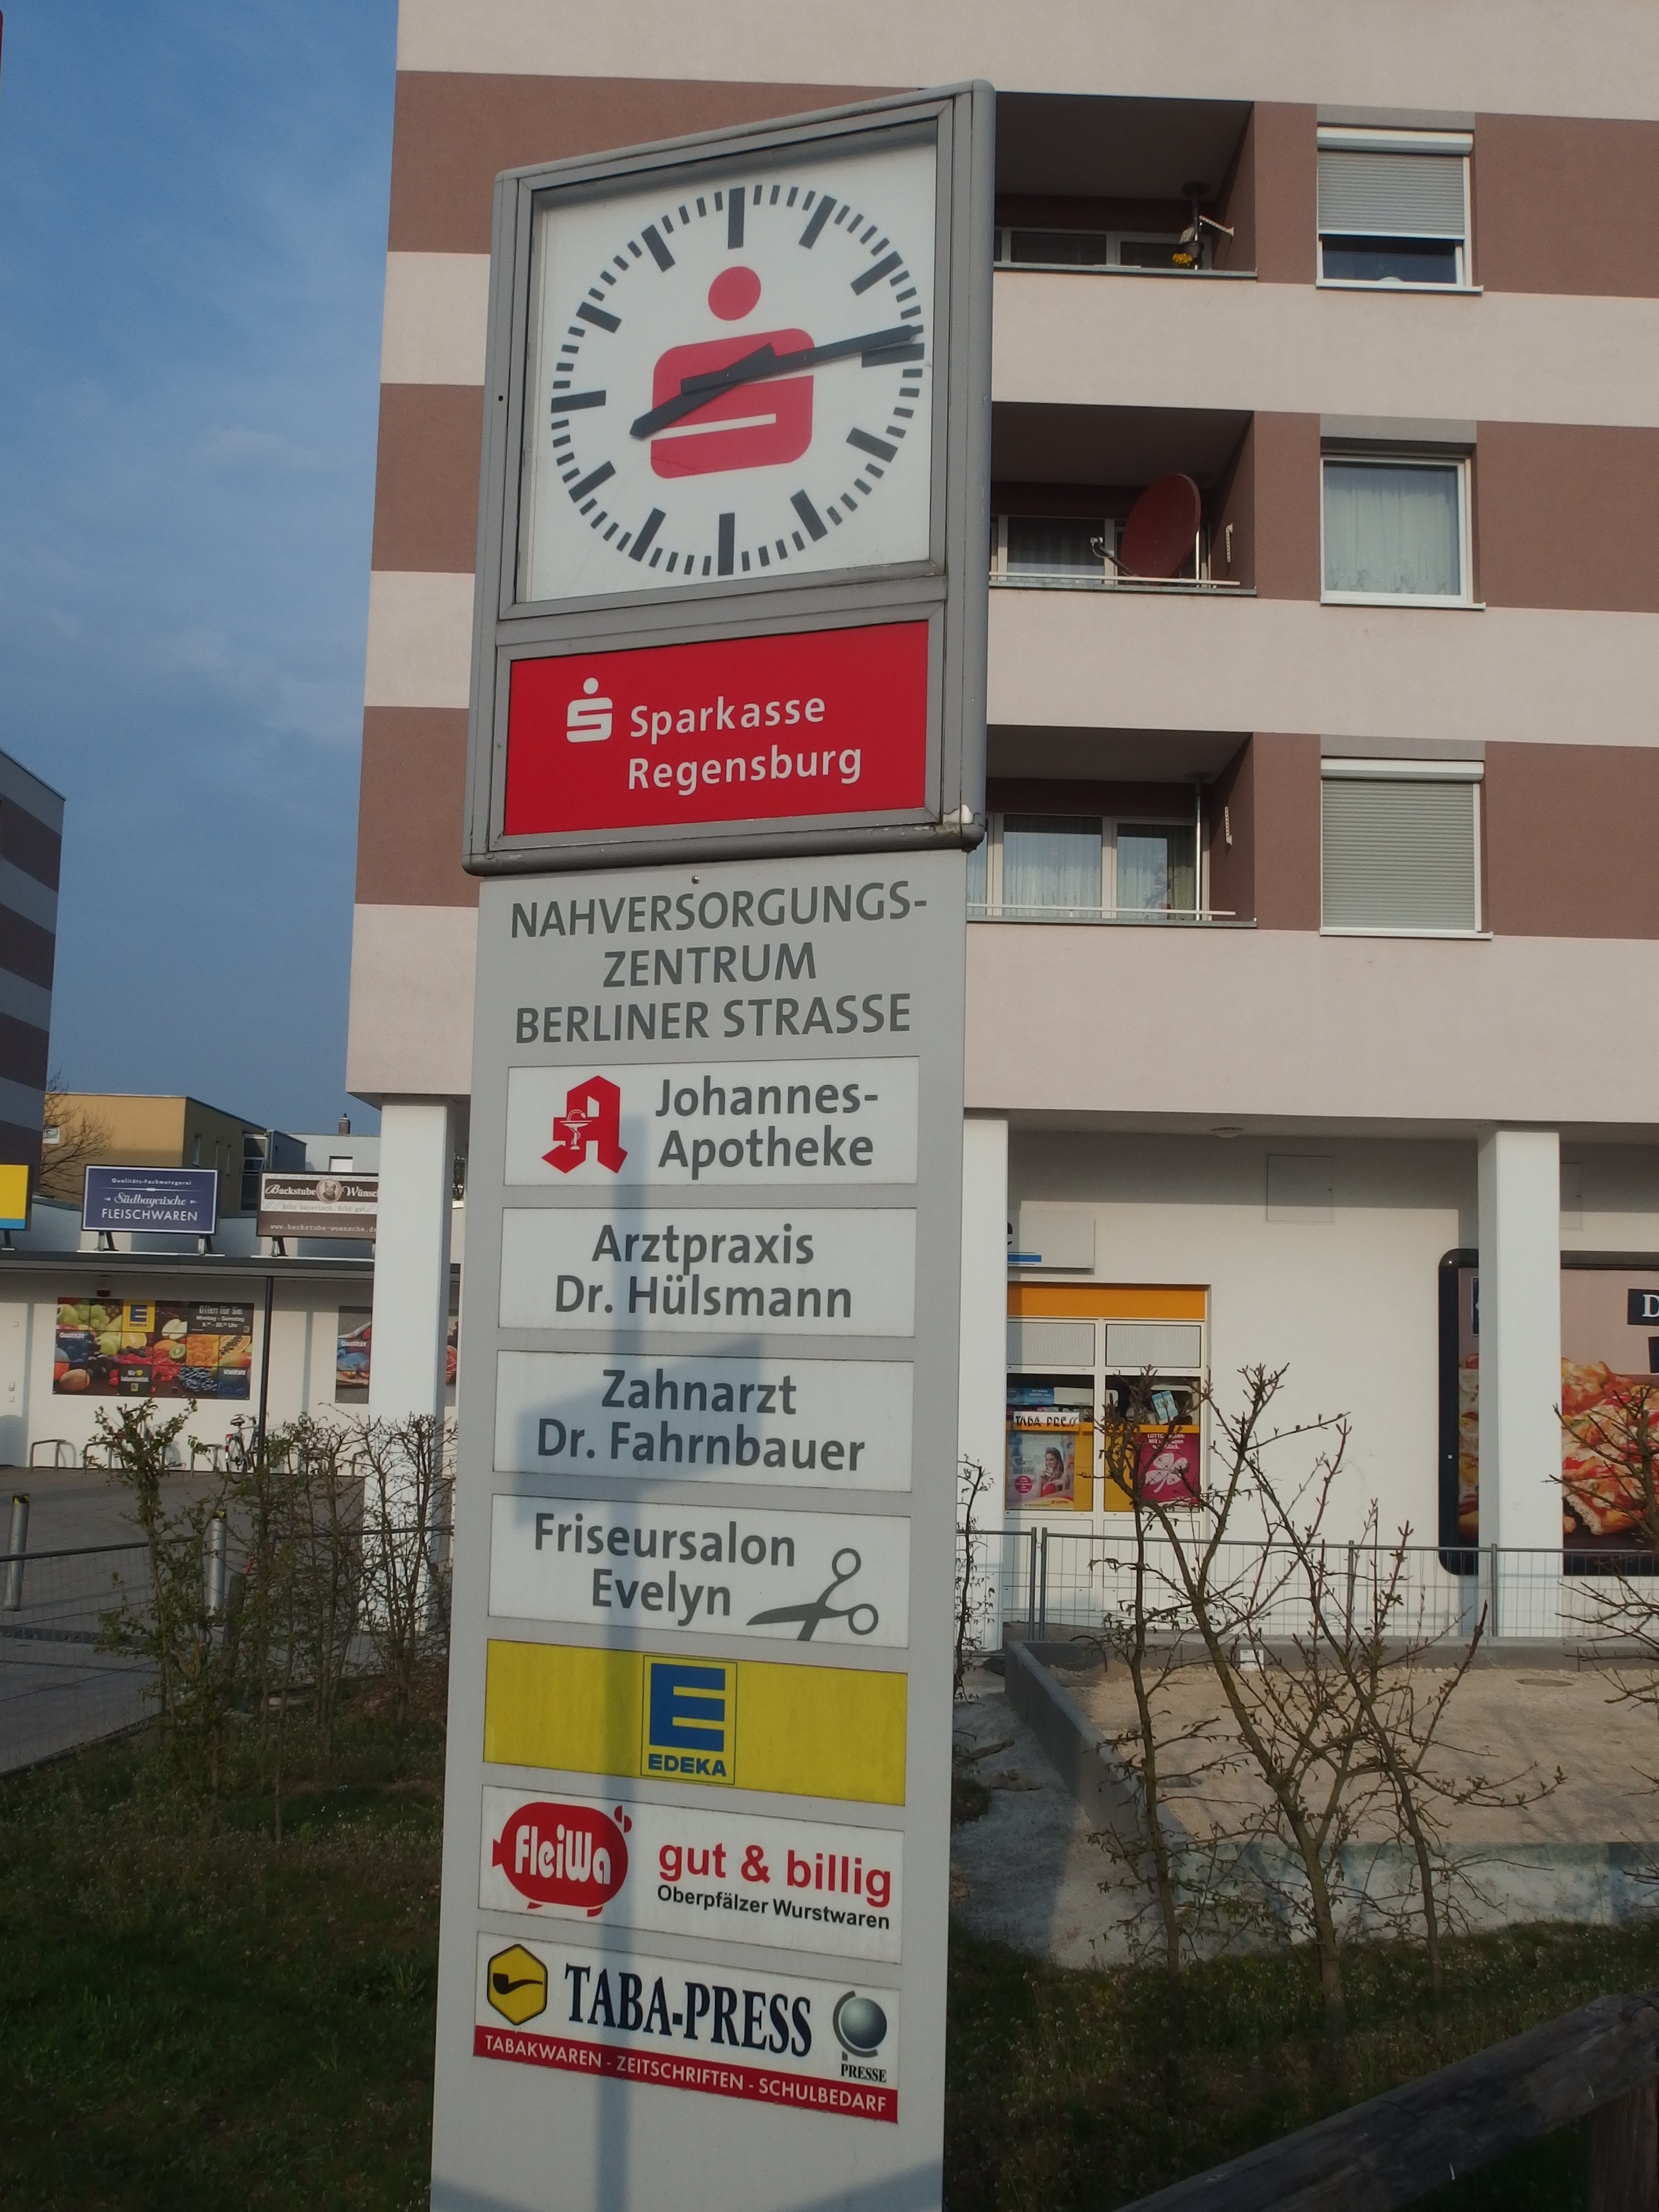 Hinweistafel zum Nahversorgungszentrum Berliner Straße, in dem sich auch die Johannes Apotheke befindet